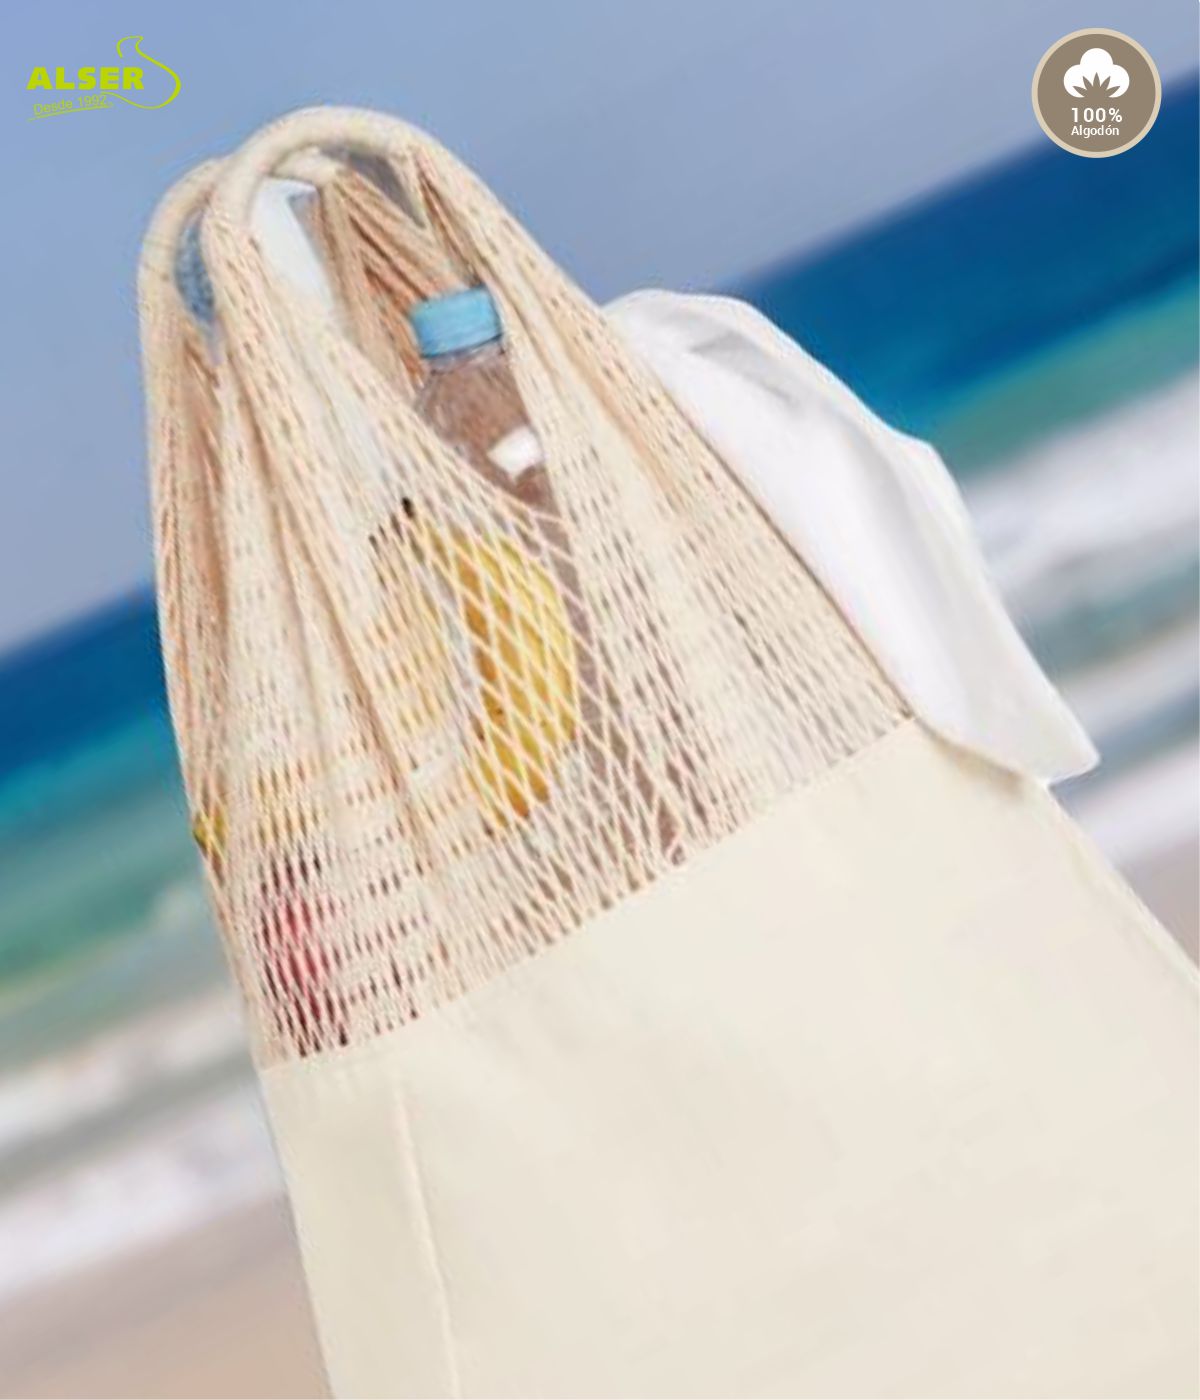 Beca sextante Habitual Bolsa rejilla playa: el complemento perfecto para el verano 🌞